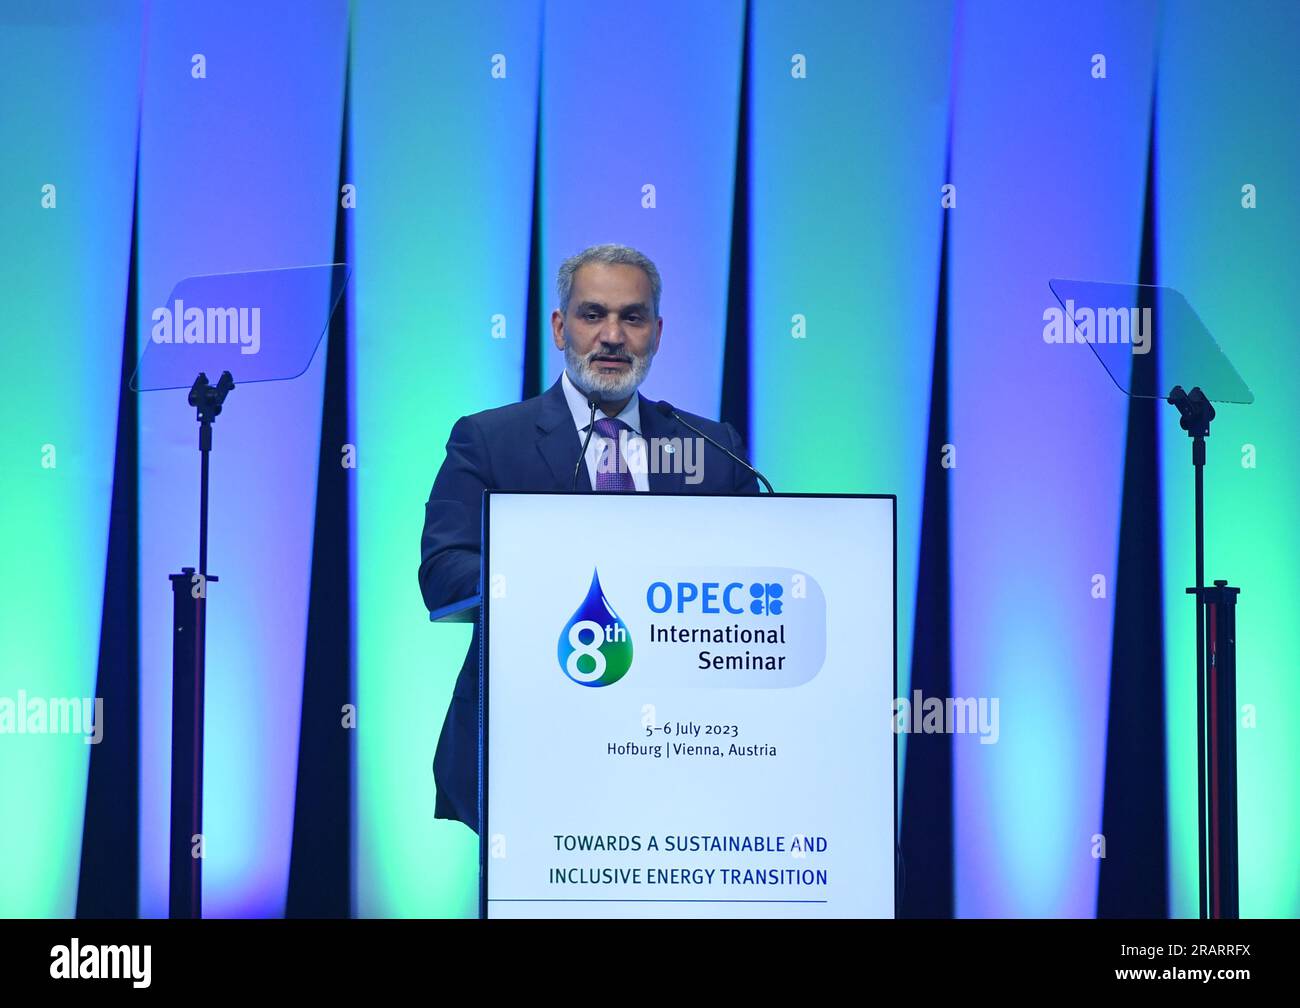 (230705) -- WIEN, 5. Juli 2023 (Xinhua) -- OPEC-Generalsekretär Haitham Al Ghais hält eine Rede während des 8. OPEC-Internationalen Seminars am 5. Juli 2023 in Wien. Die Organisation der Erdöl exportierenden Länder (OPEC) startete am Mittwoch hier das Internationale OPEC-Seminar 8., die wichtigste Energieveranstaltung der OPEC. Das zweitägige Seminar zum Thema "auf dem Weg zu einer nachhaltigen und integrativen Energiewende" bringt Minister aus OPEC-Mitgliedsländern und anderen Erdöl produzierenden und verbrauchenden Ländern sowie Vertreter internationaler Organisationen und Öl- und Energieunternehmen zusammen Stockfoto